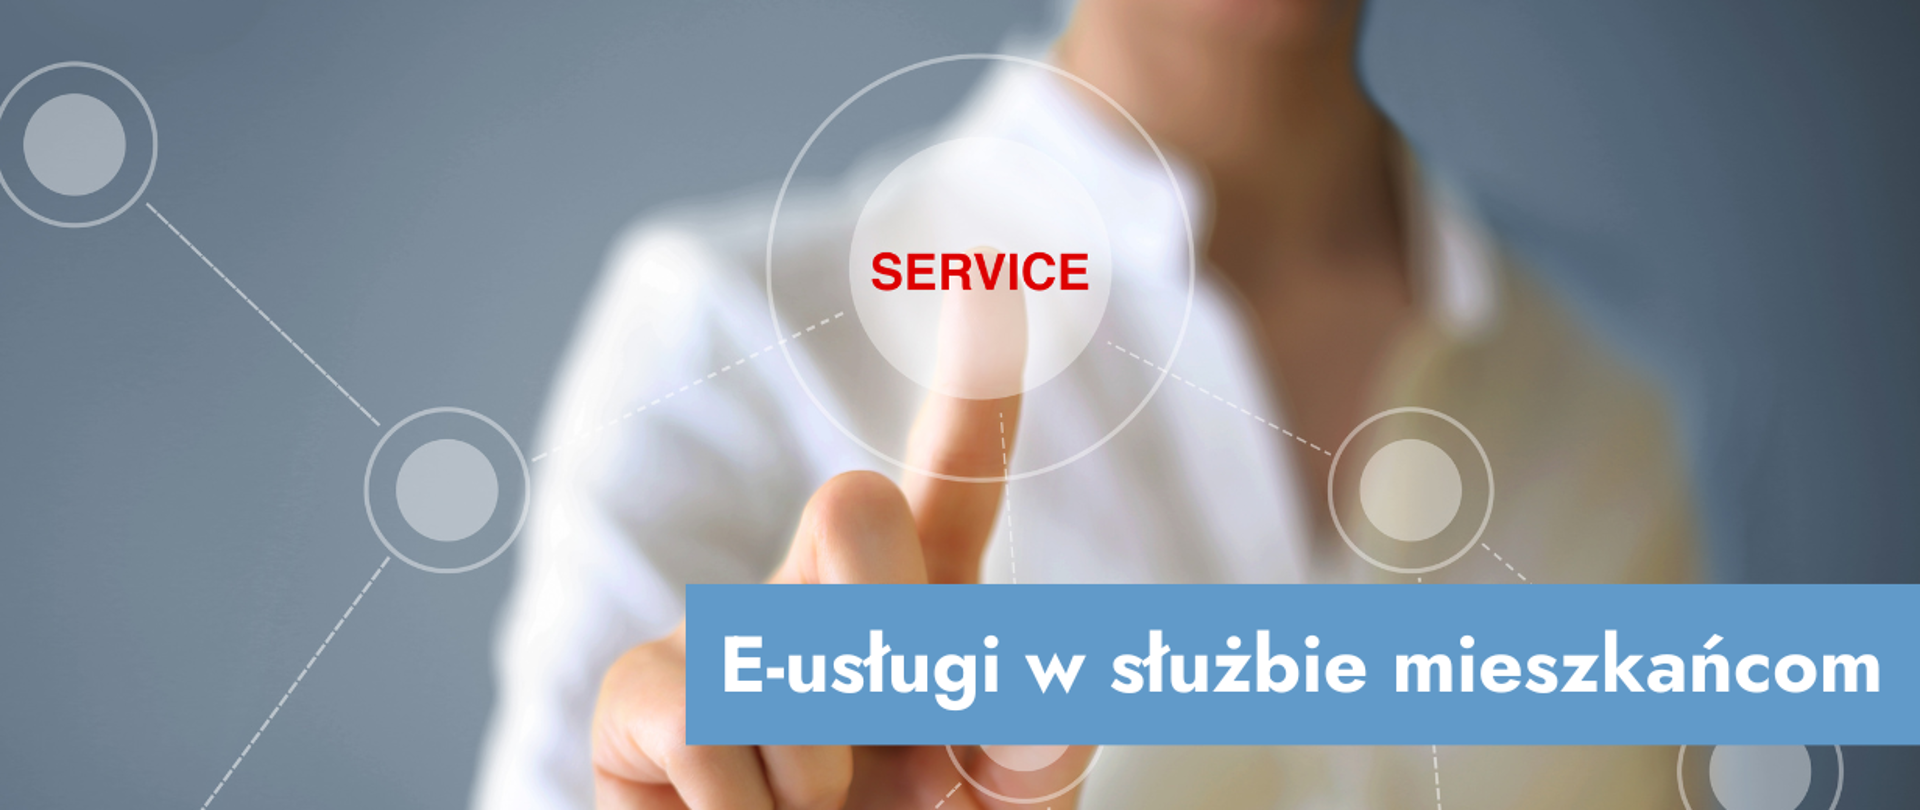 Grafika przedstawiająca kobietę klikającą napis "service" i napis: E-usługi w służbie mieszkańcom